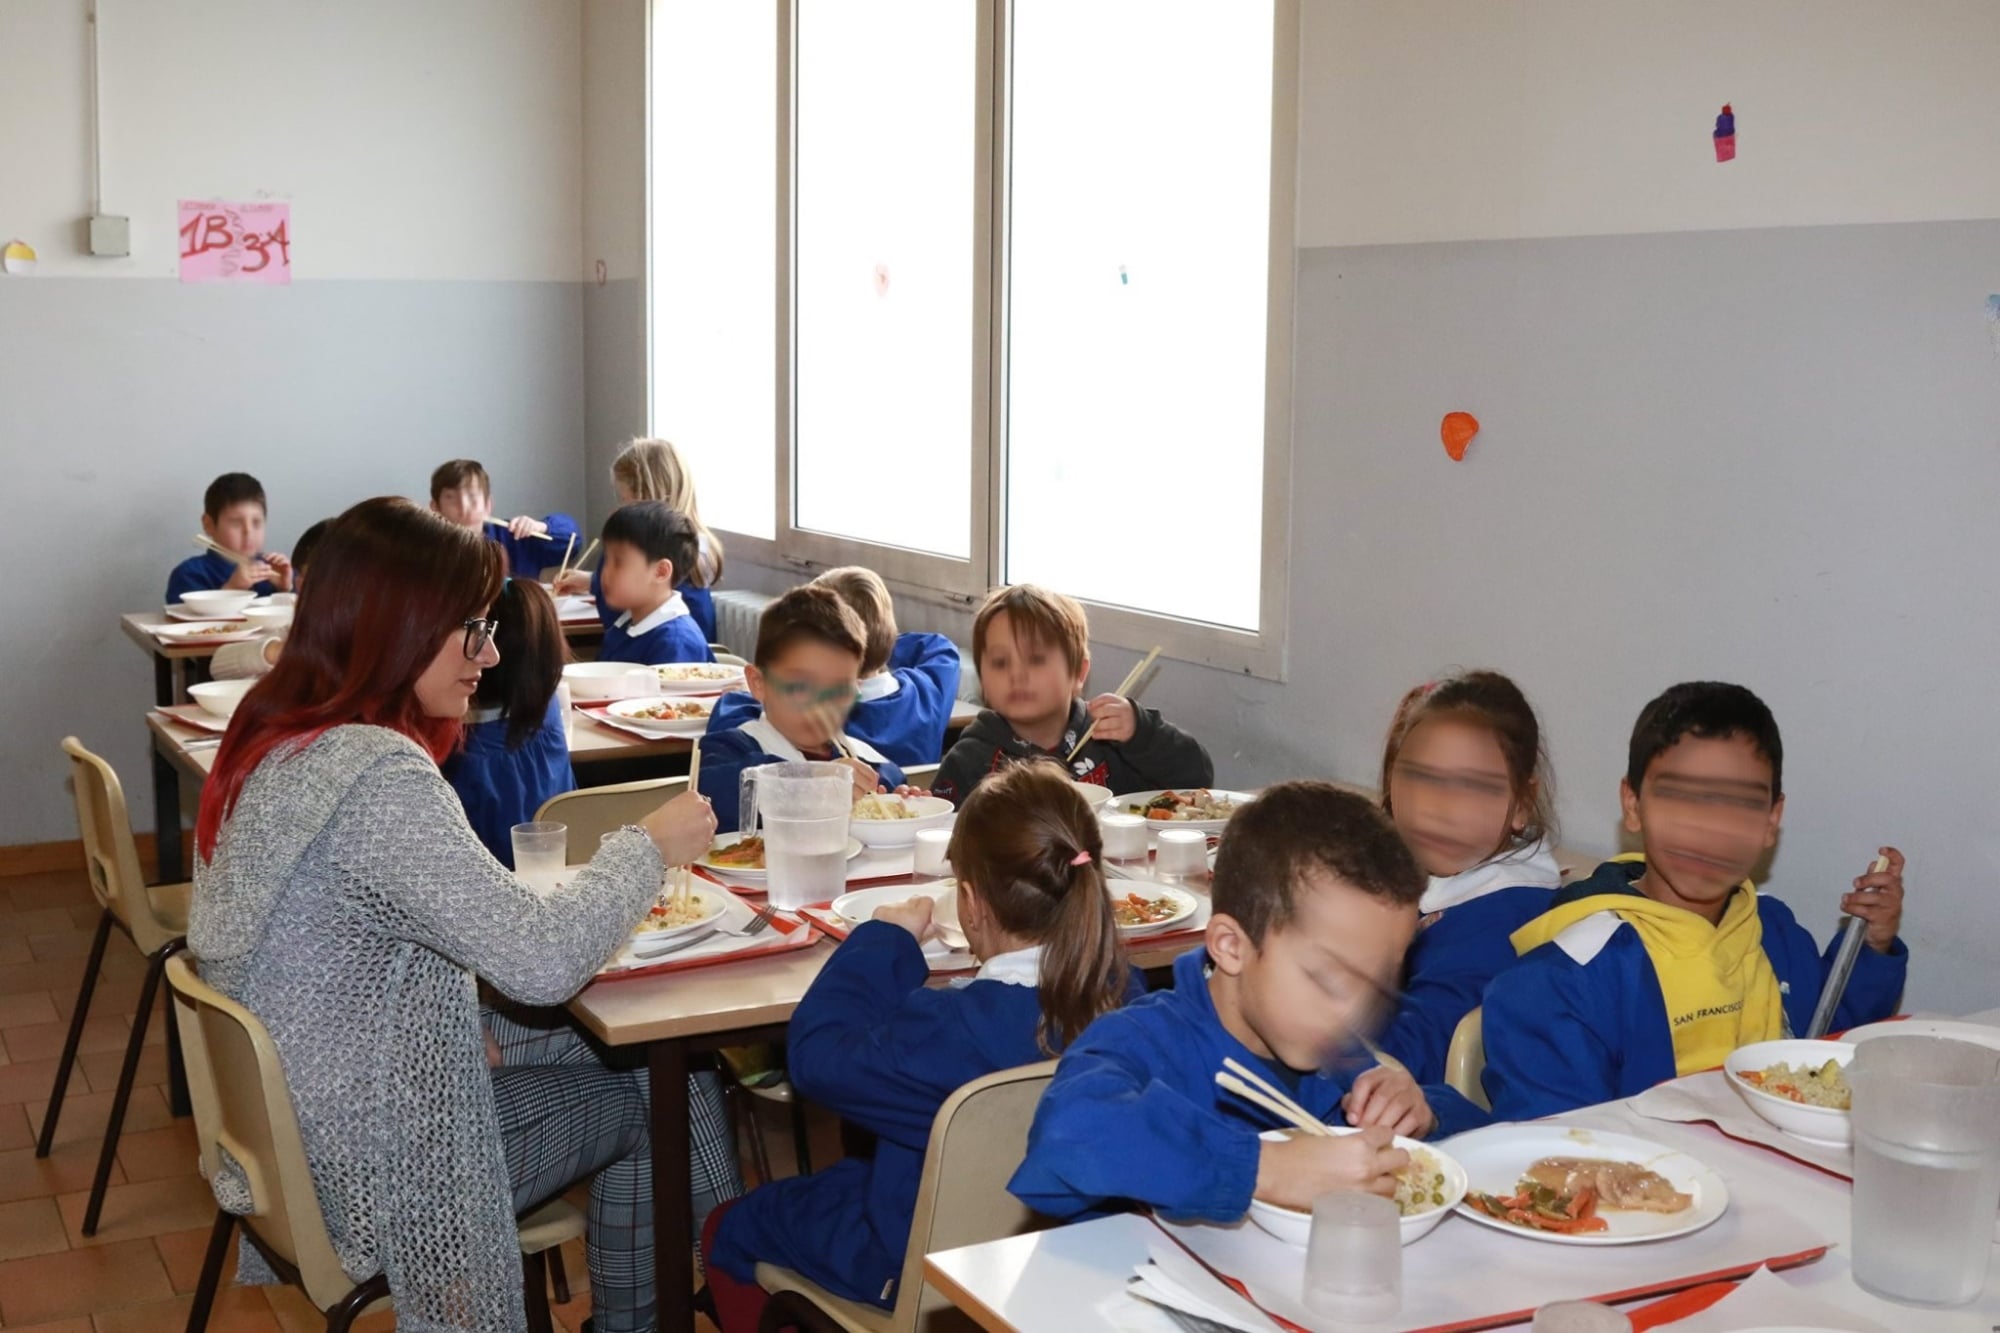 Coronavirus, la solidarietà dei bambini: cibo cinese a mensa - intoscana